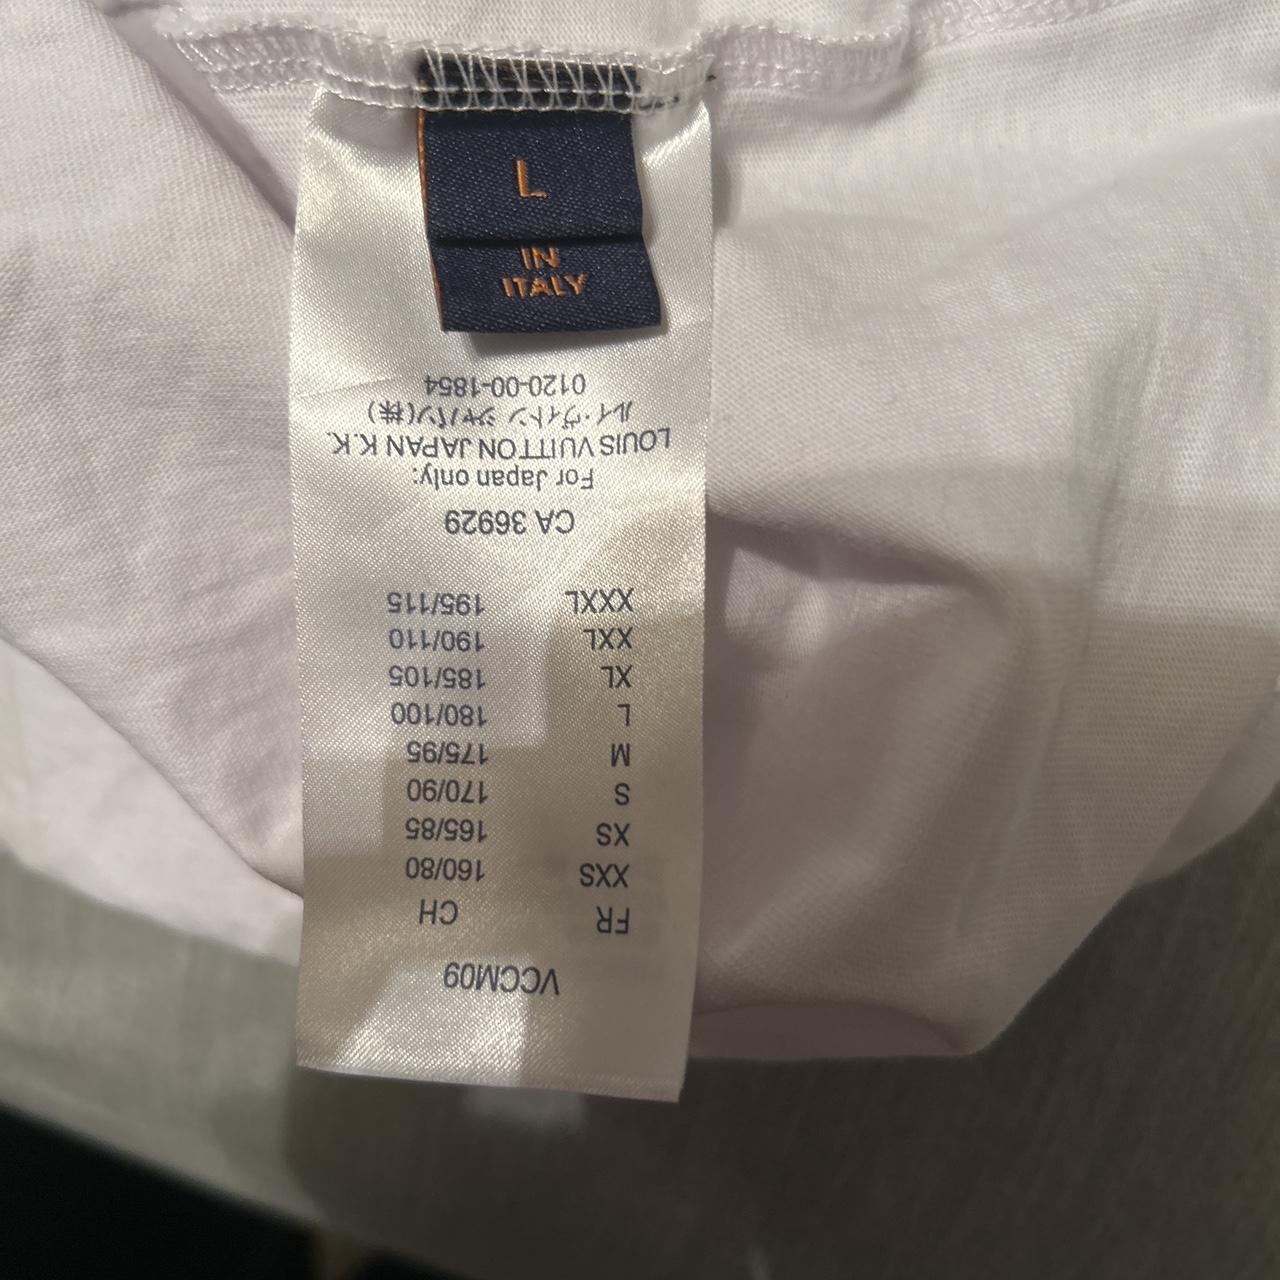 Louis Vuitton Do a Kickflip shirt - Dalatshirt